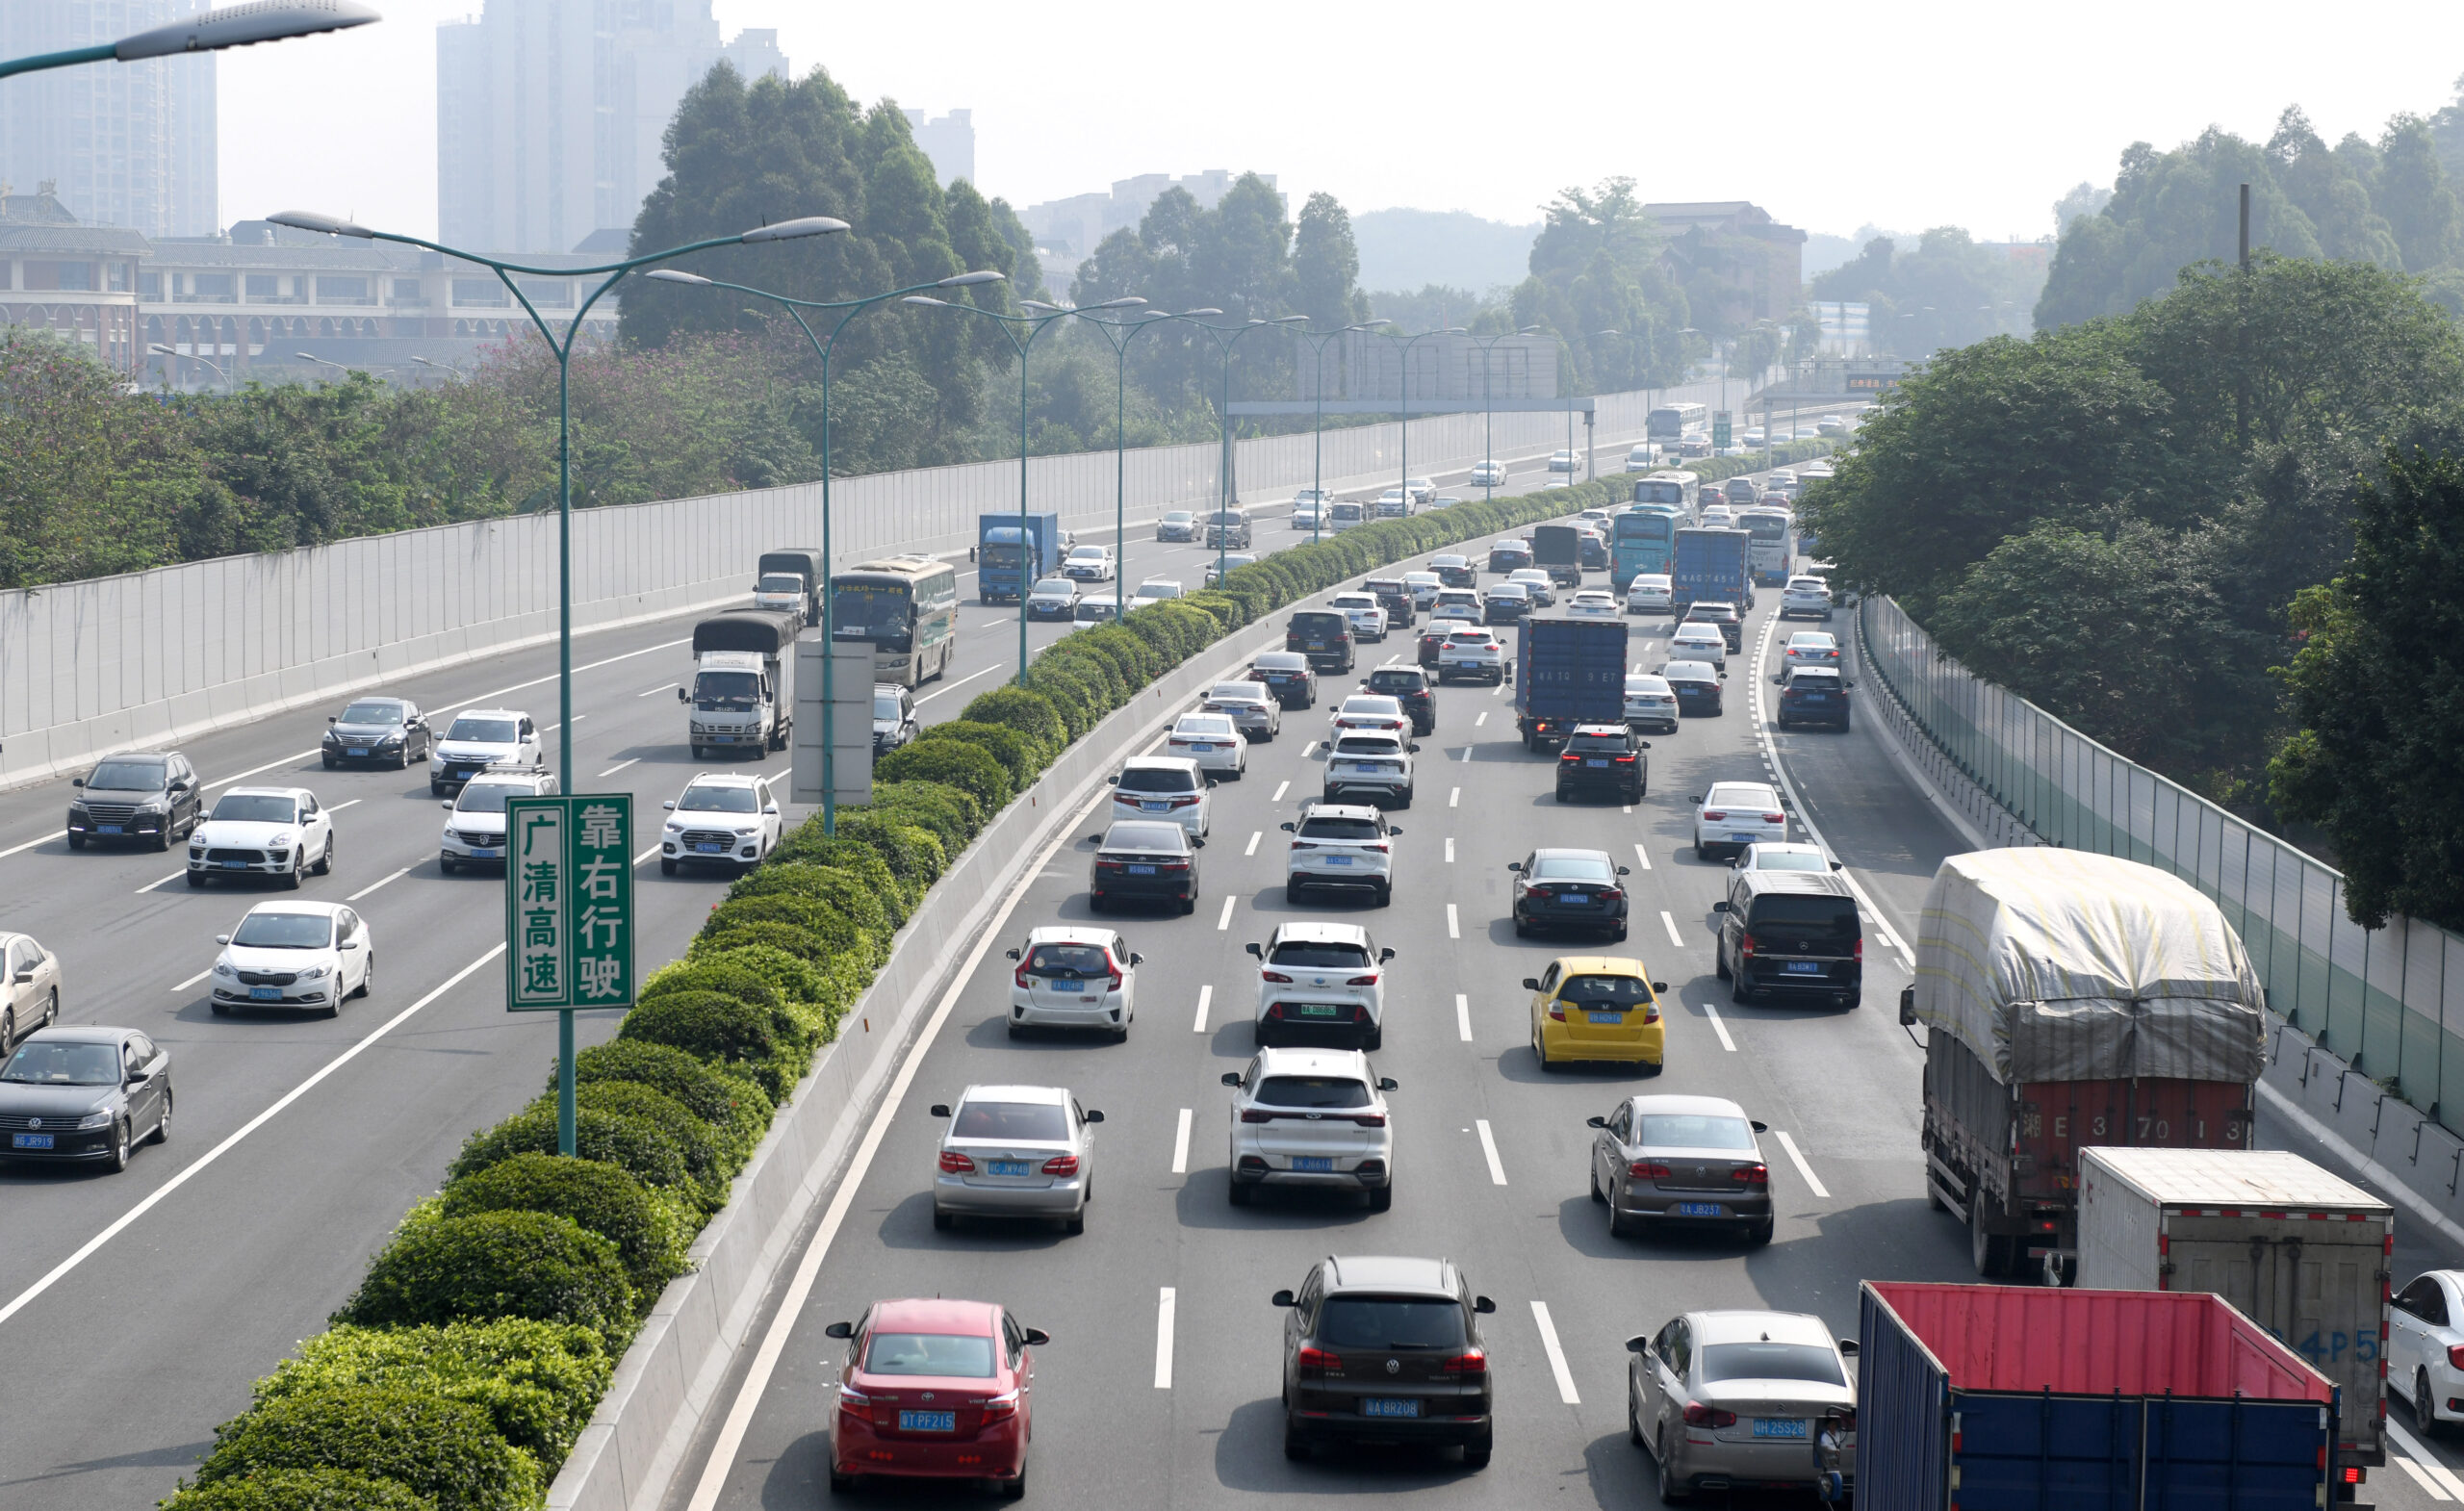 ยอดขาย 'รถยนต์ใช้แล้ว' ของจีน เพิ่มกว่า 14% ช่วงม.ค.-พ.ย.